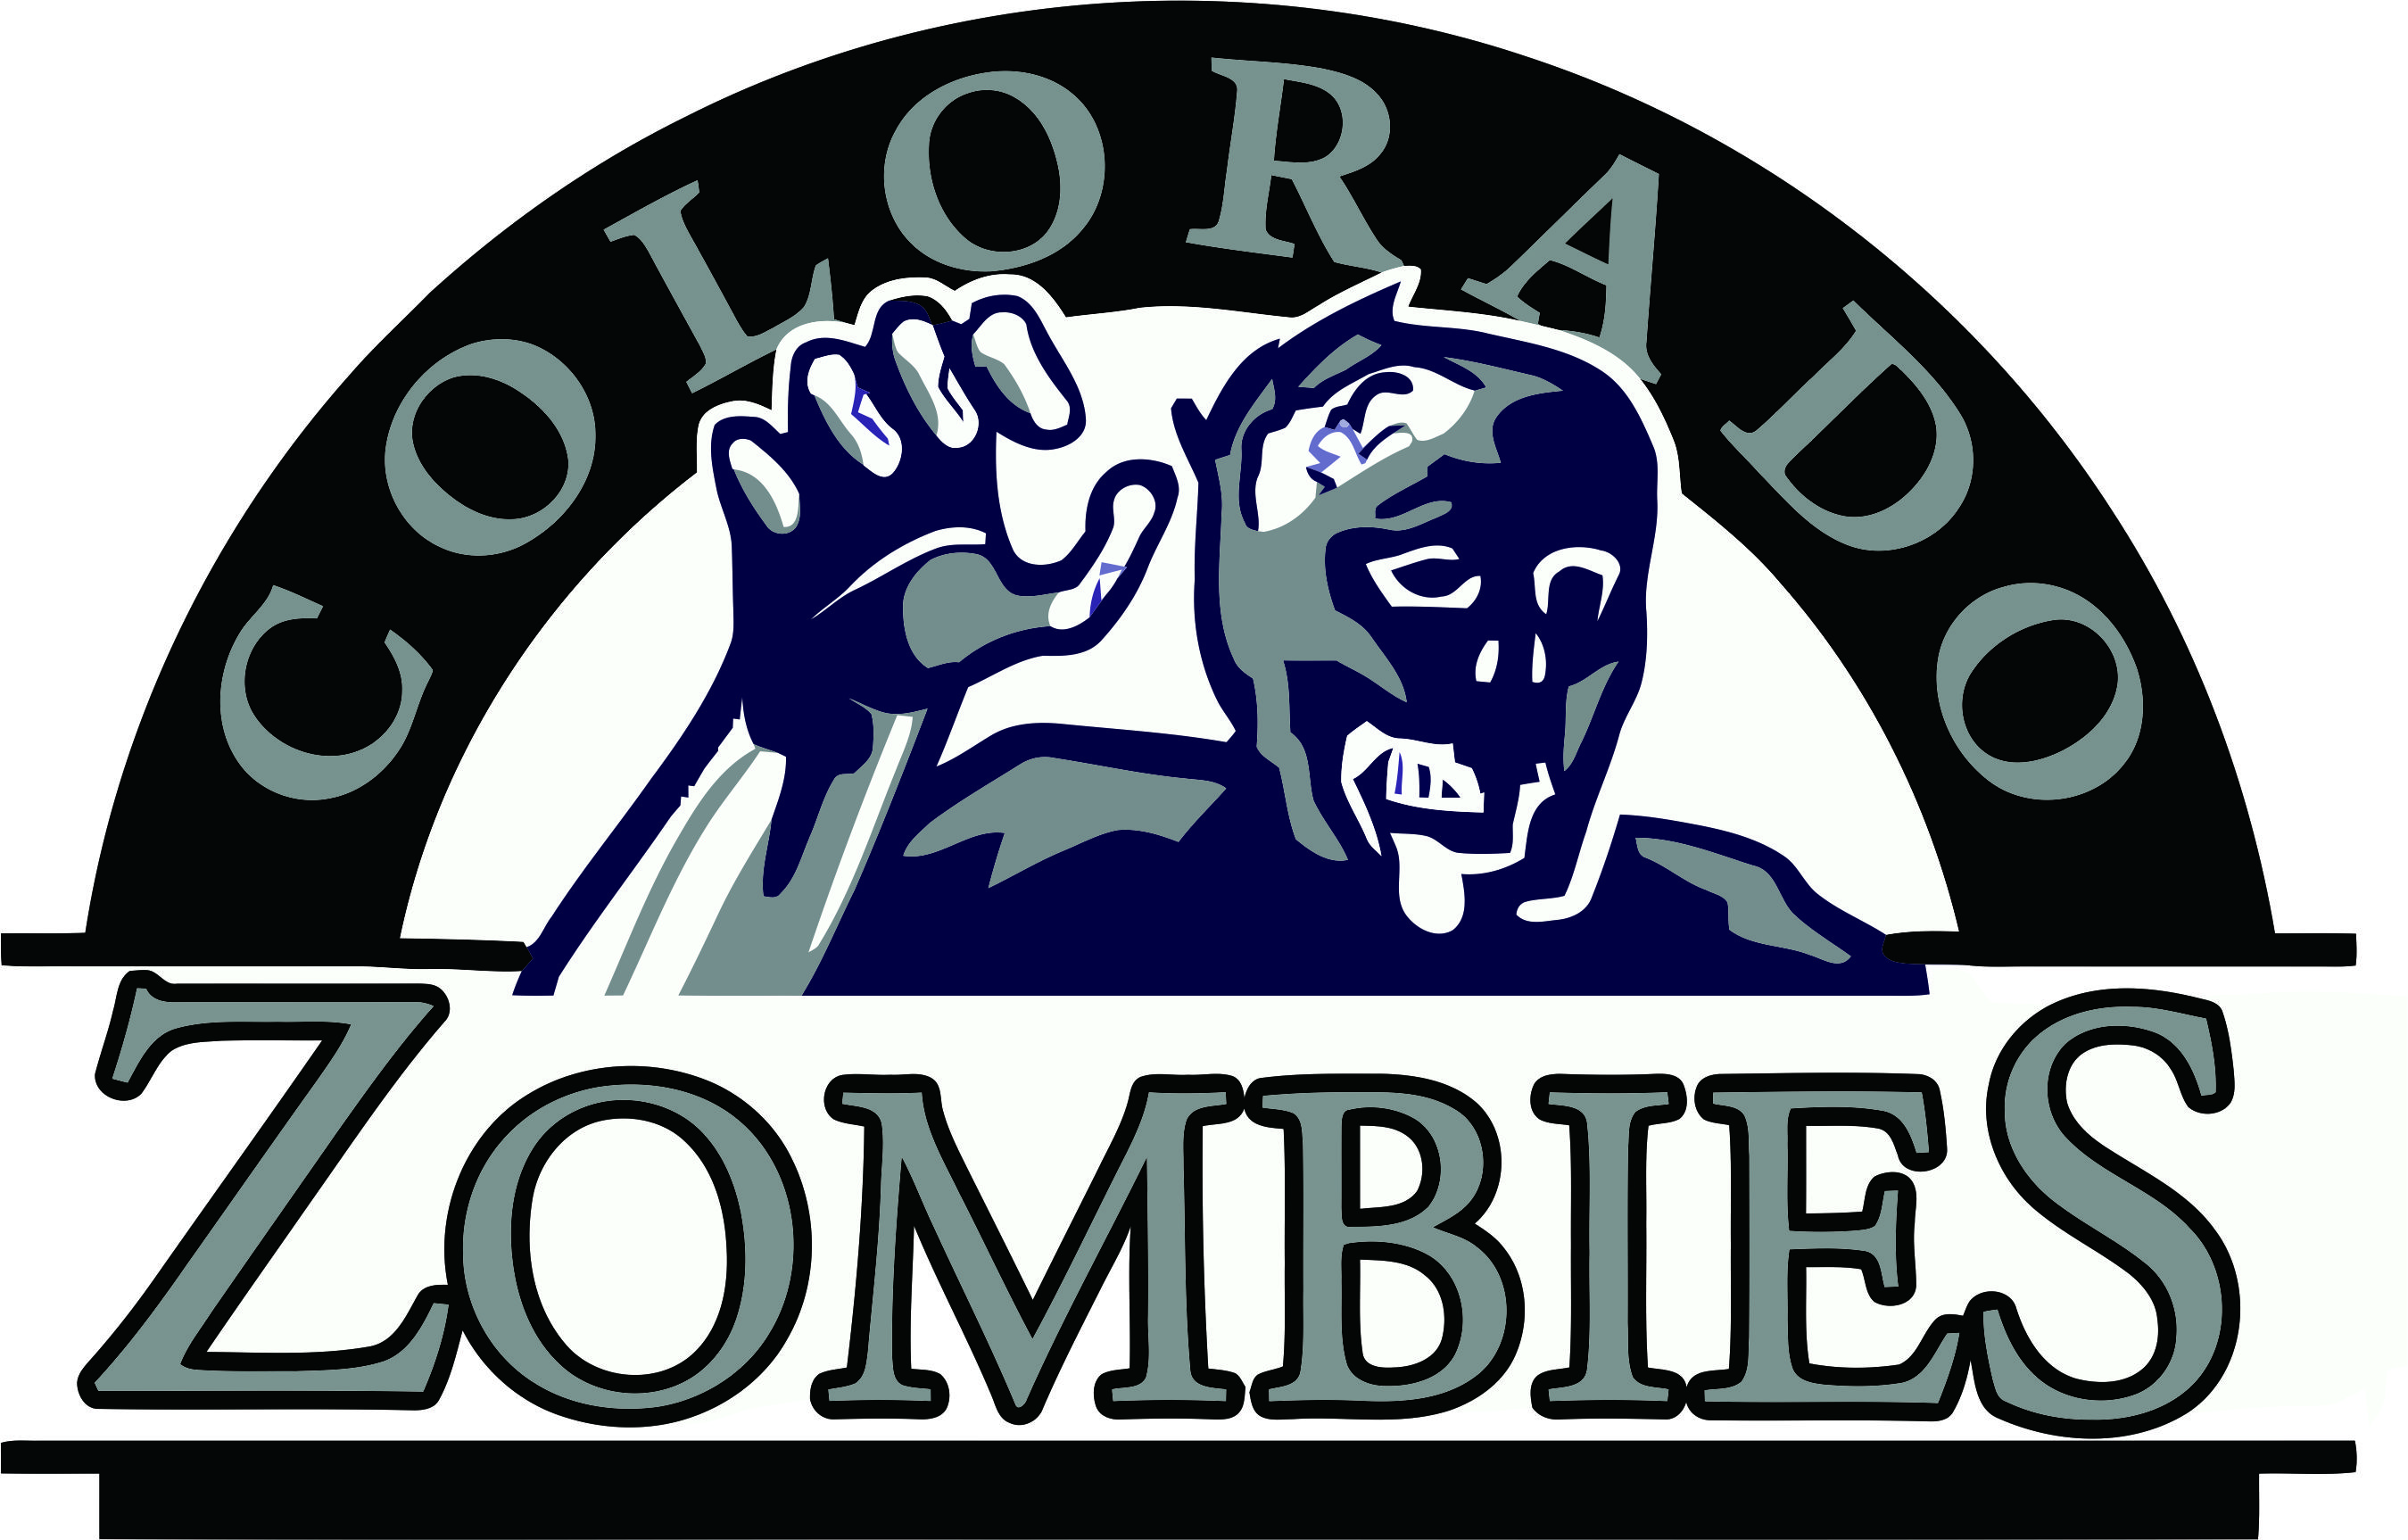 Colorado Rockies Zombies Logo iron on transfers